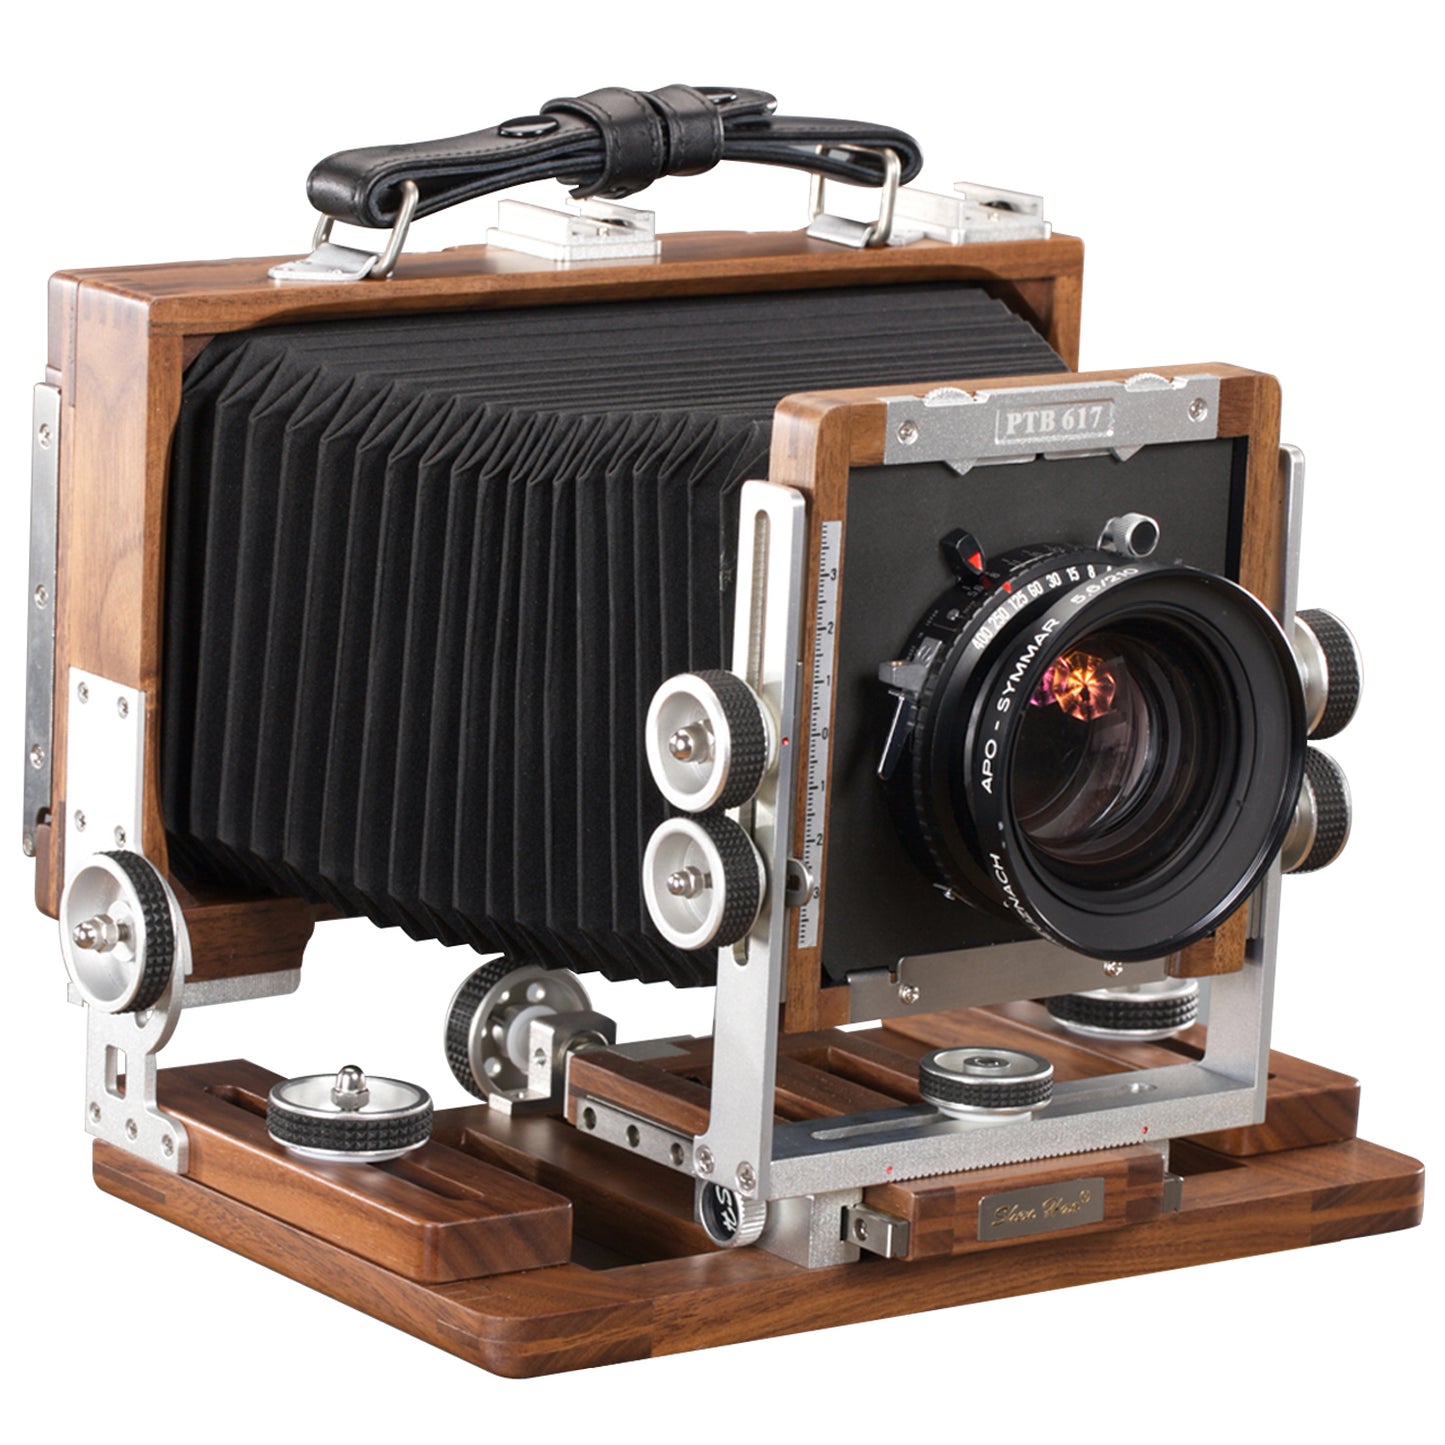 Shen Hao PTB617 Black Walnut Wood Film Camera 6x17cm Panorama di grande formato con retro in pellicola